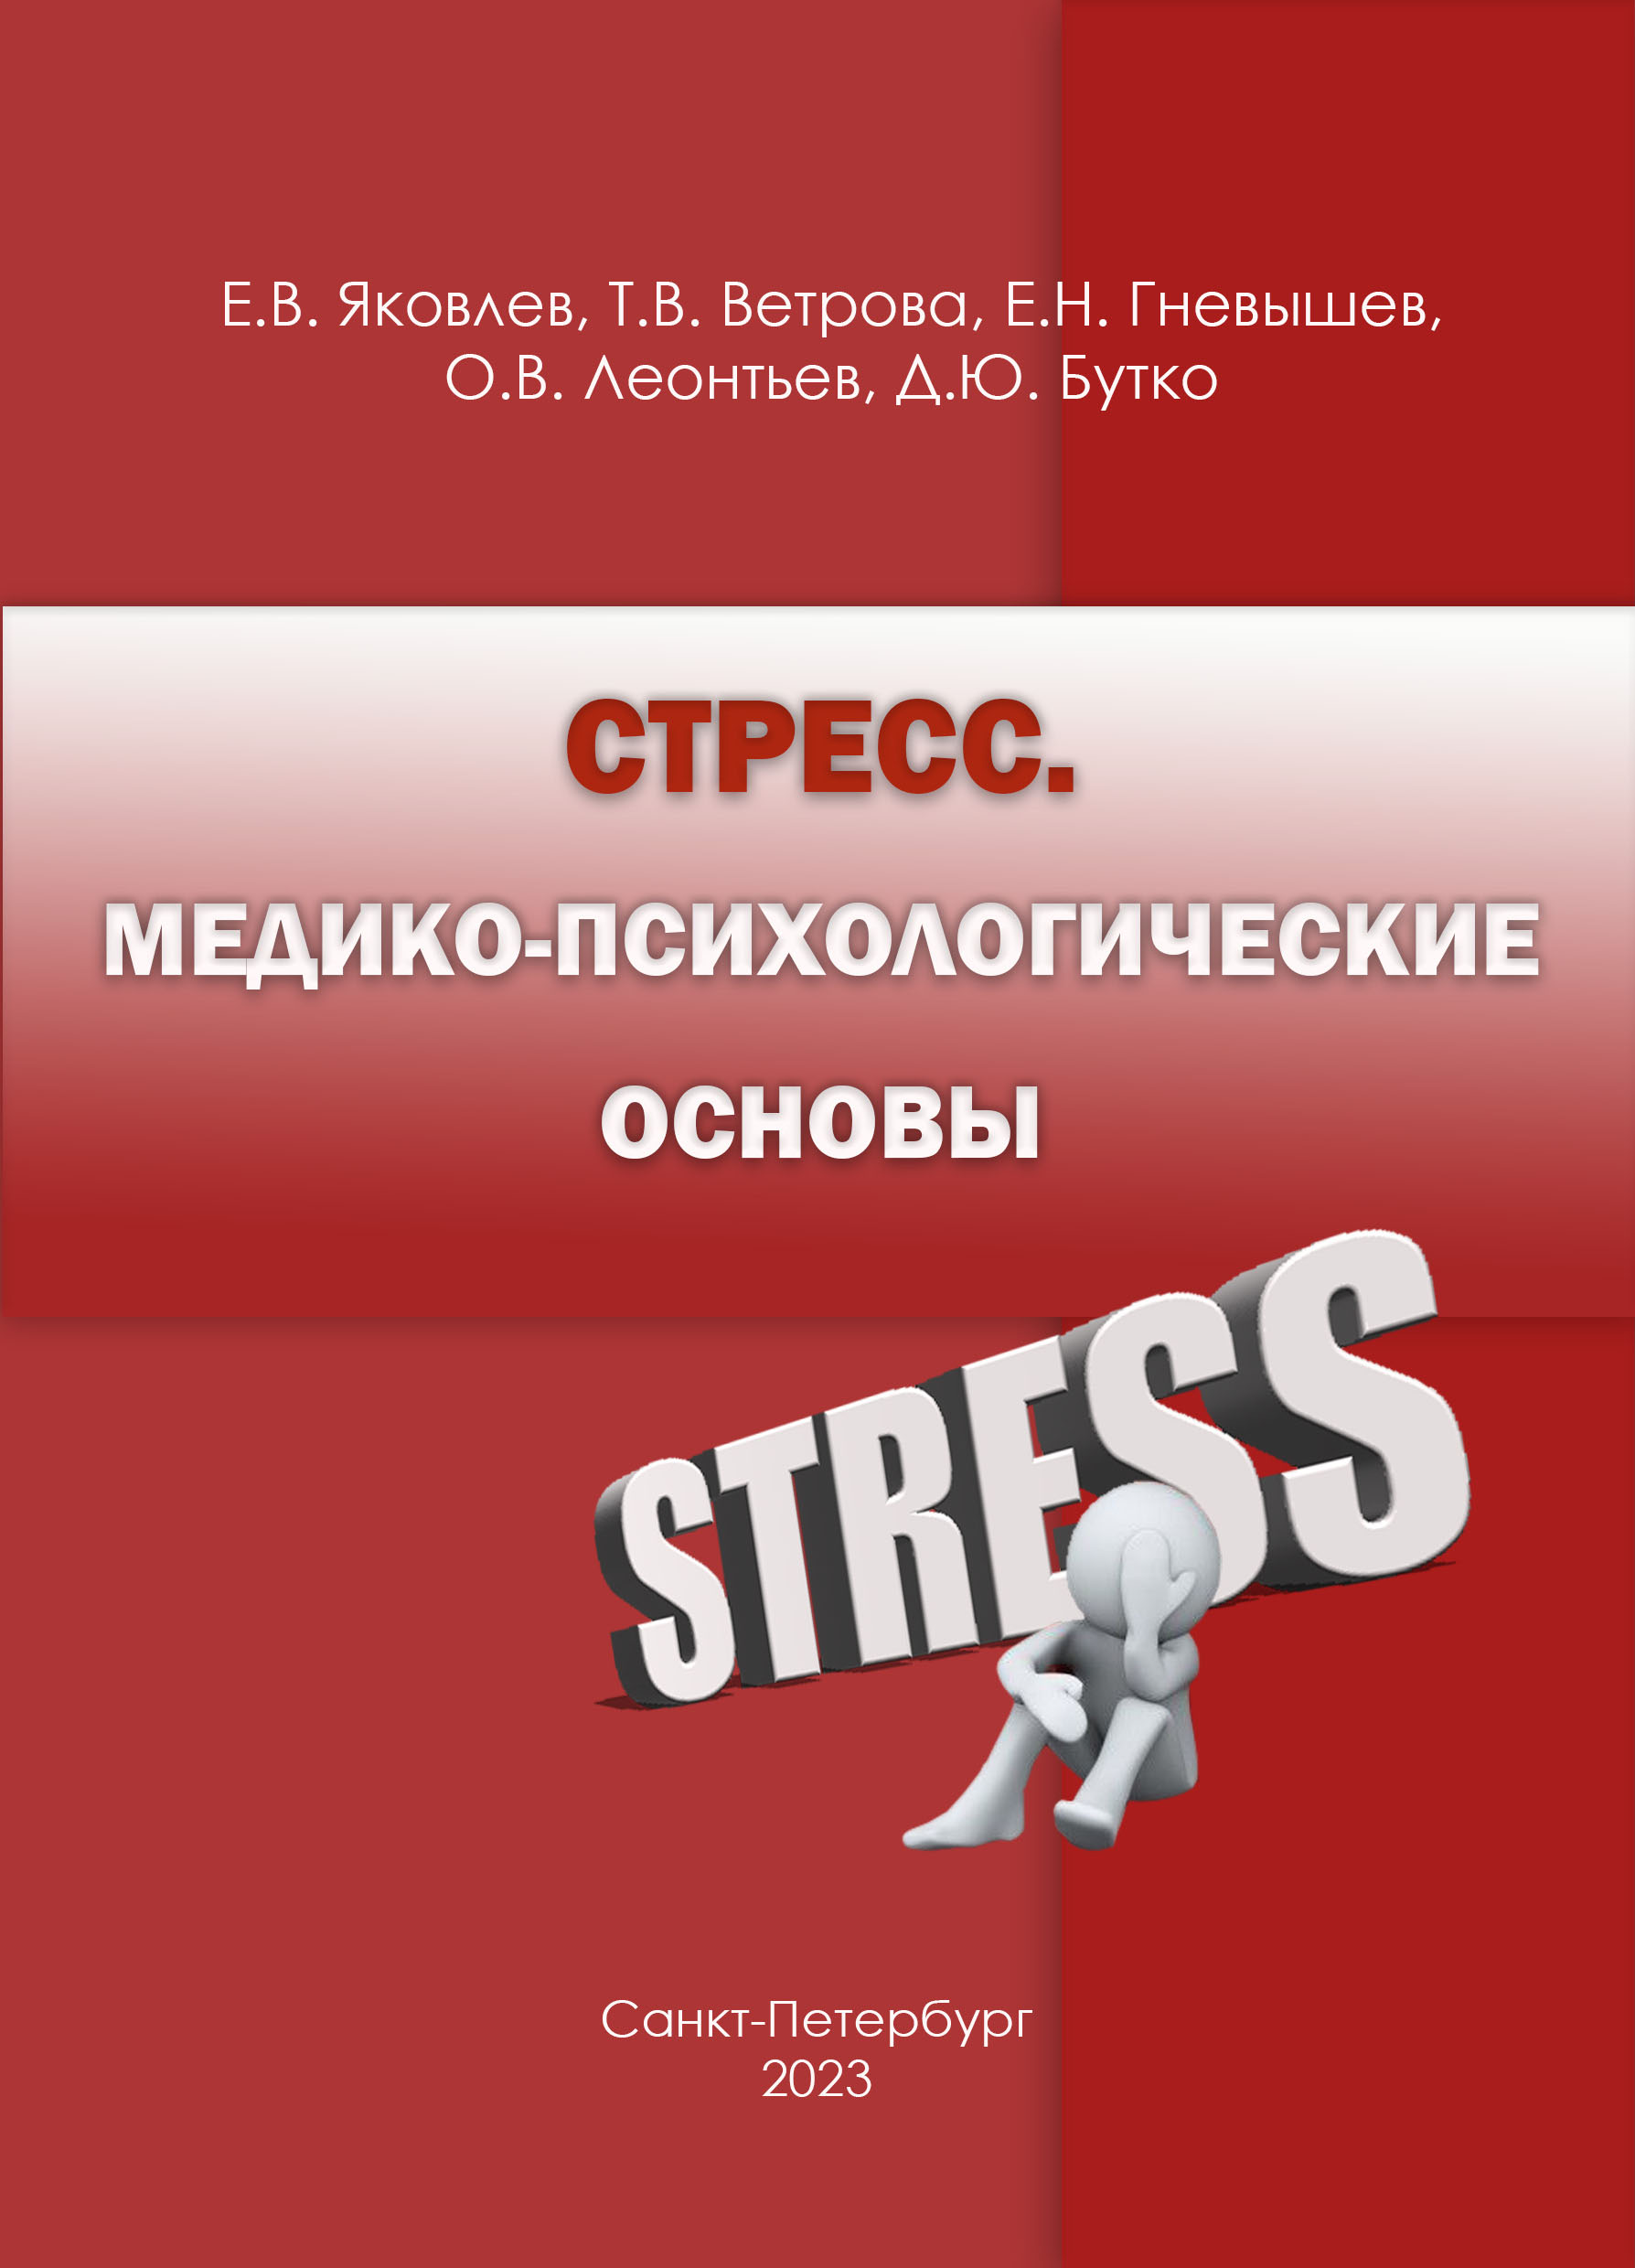             Стресс. Медико-психологические основы
    